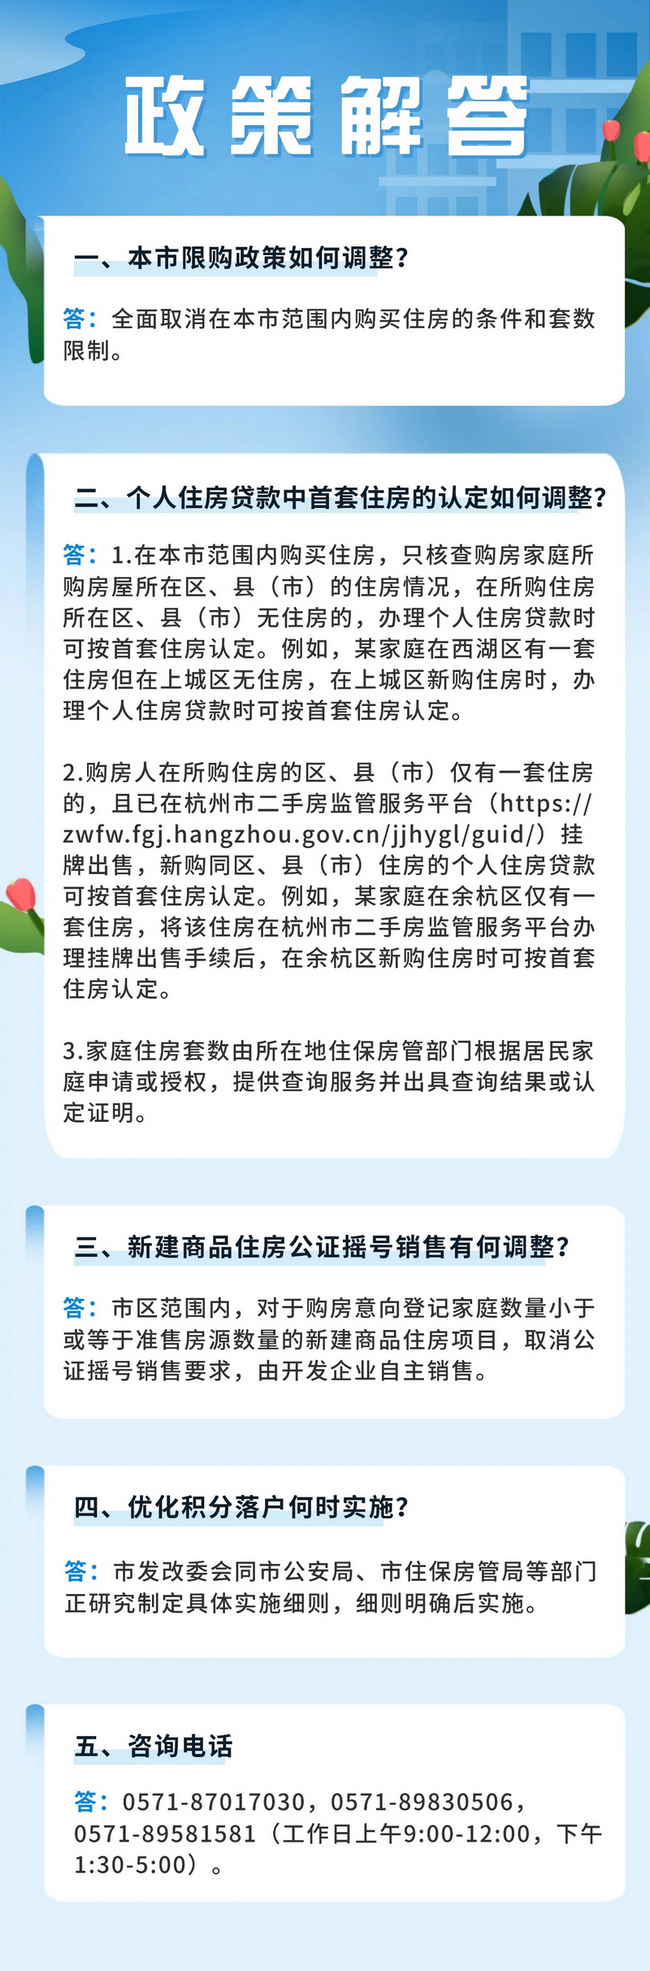 杭州市住房保障和房产管理局供图